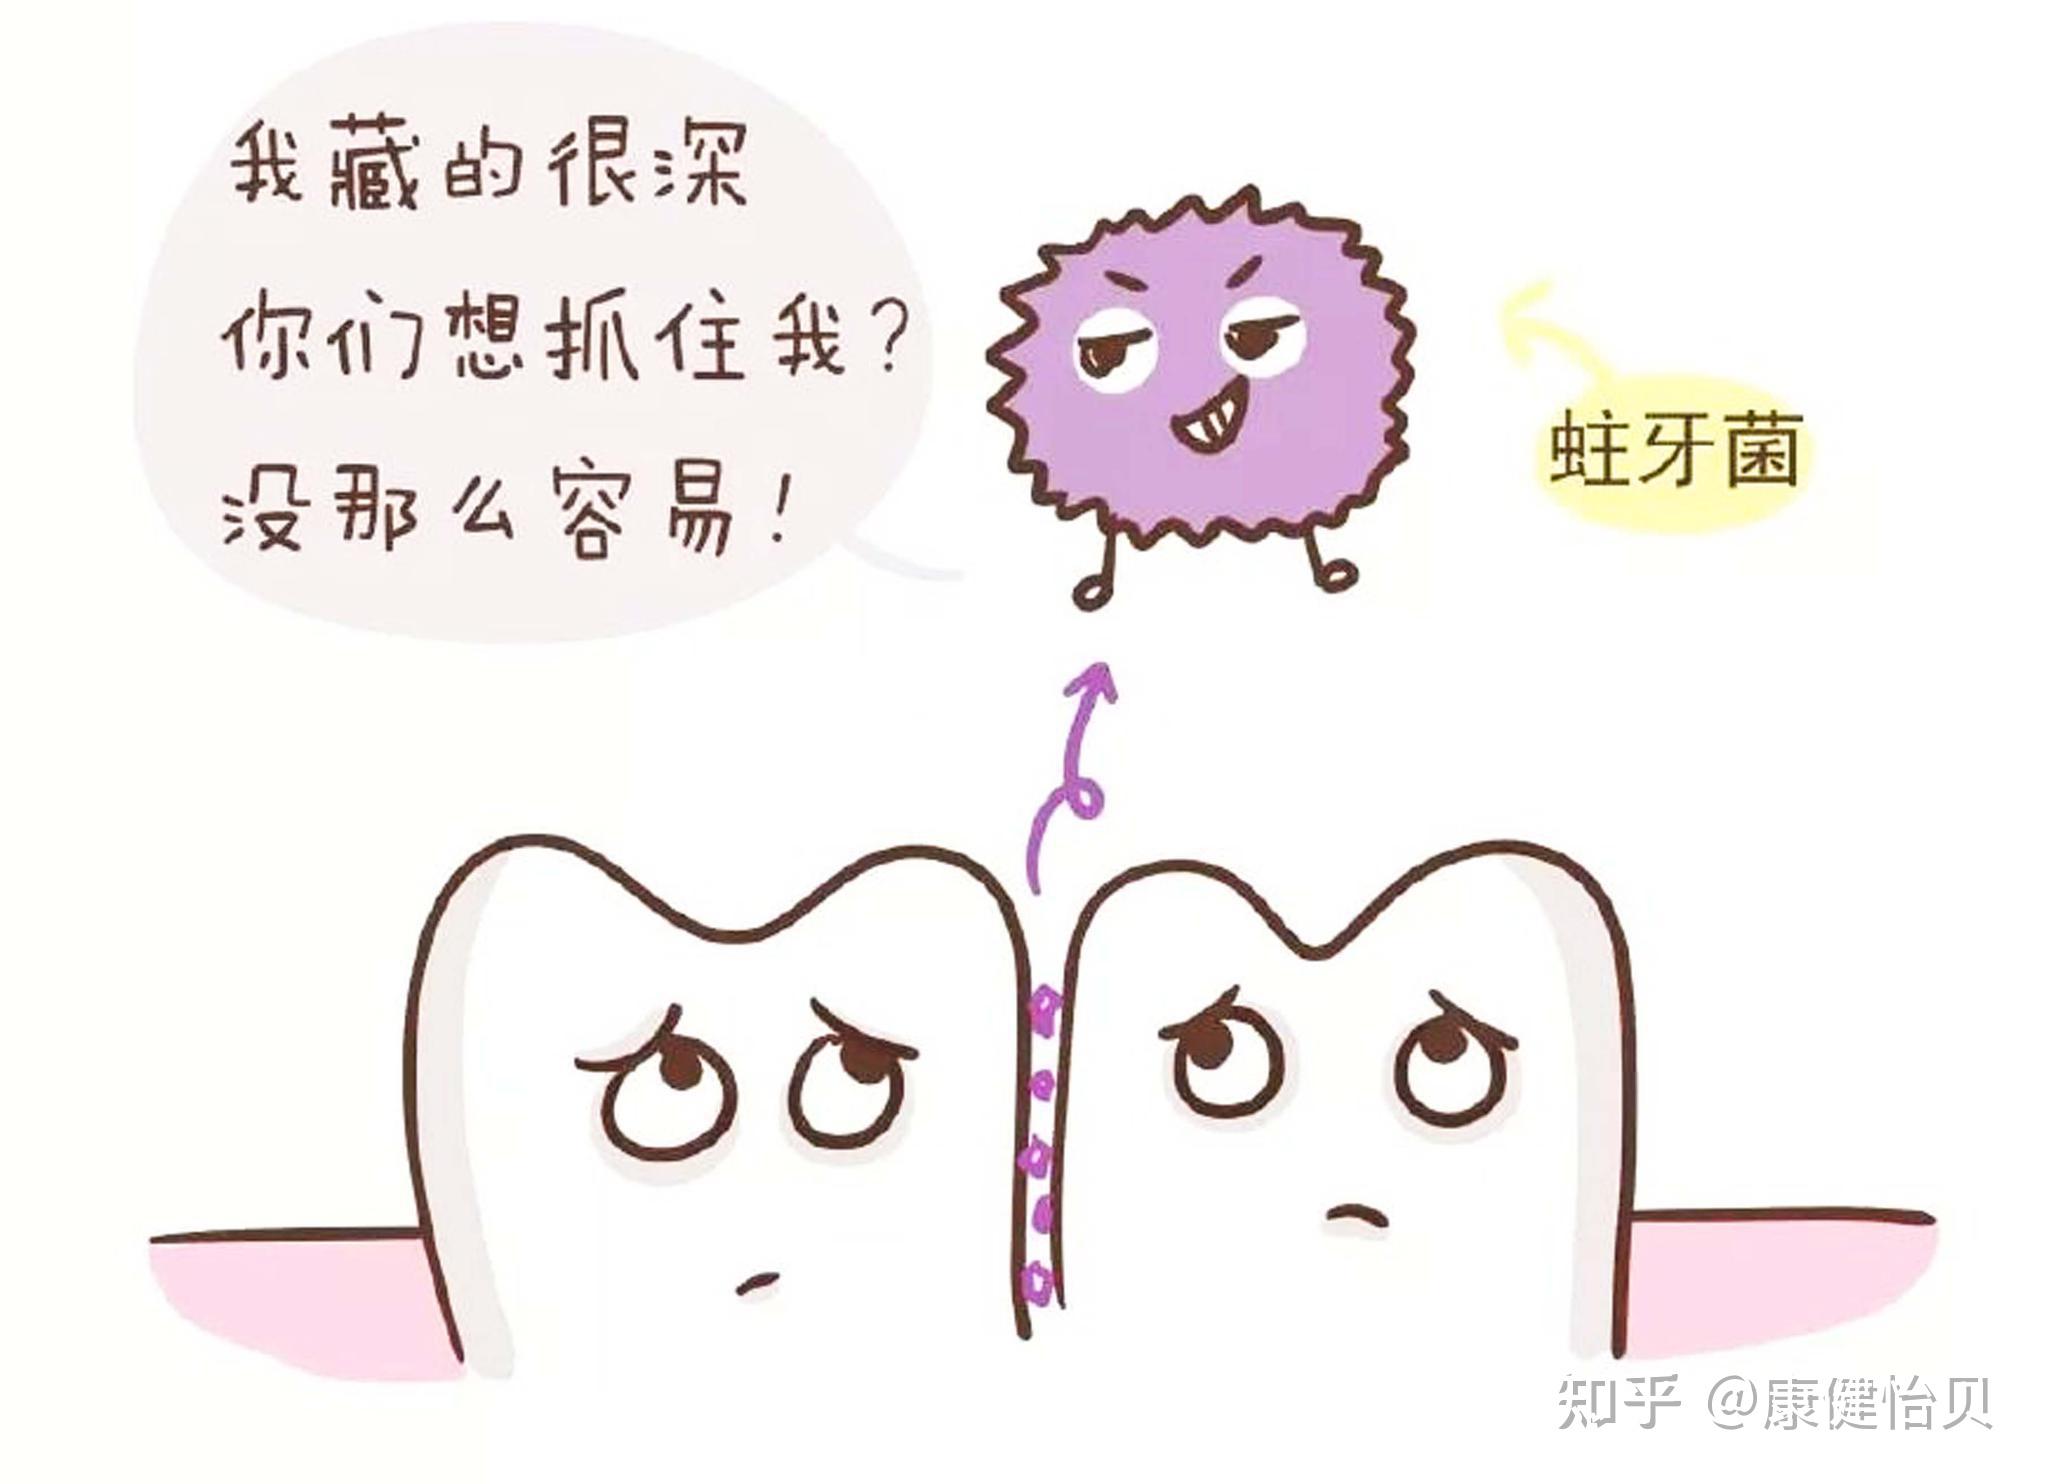 中国家用电器协会携手usmile笑容加让牙菌斑清洁有“标准”可依_新浪新闻